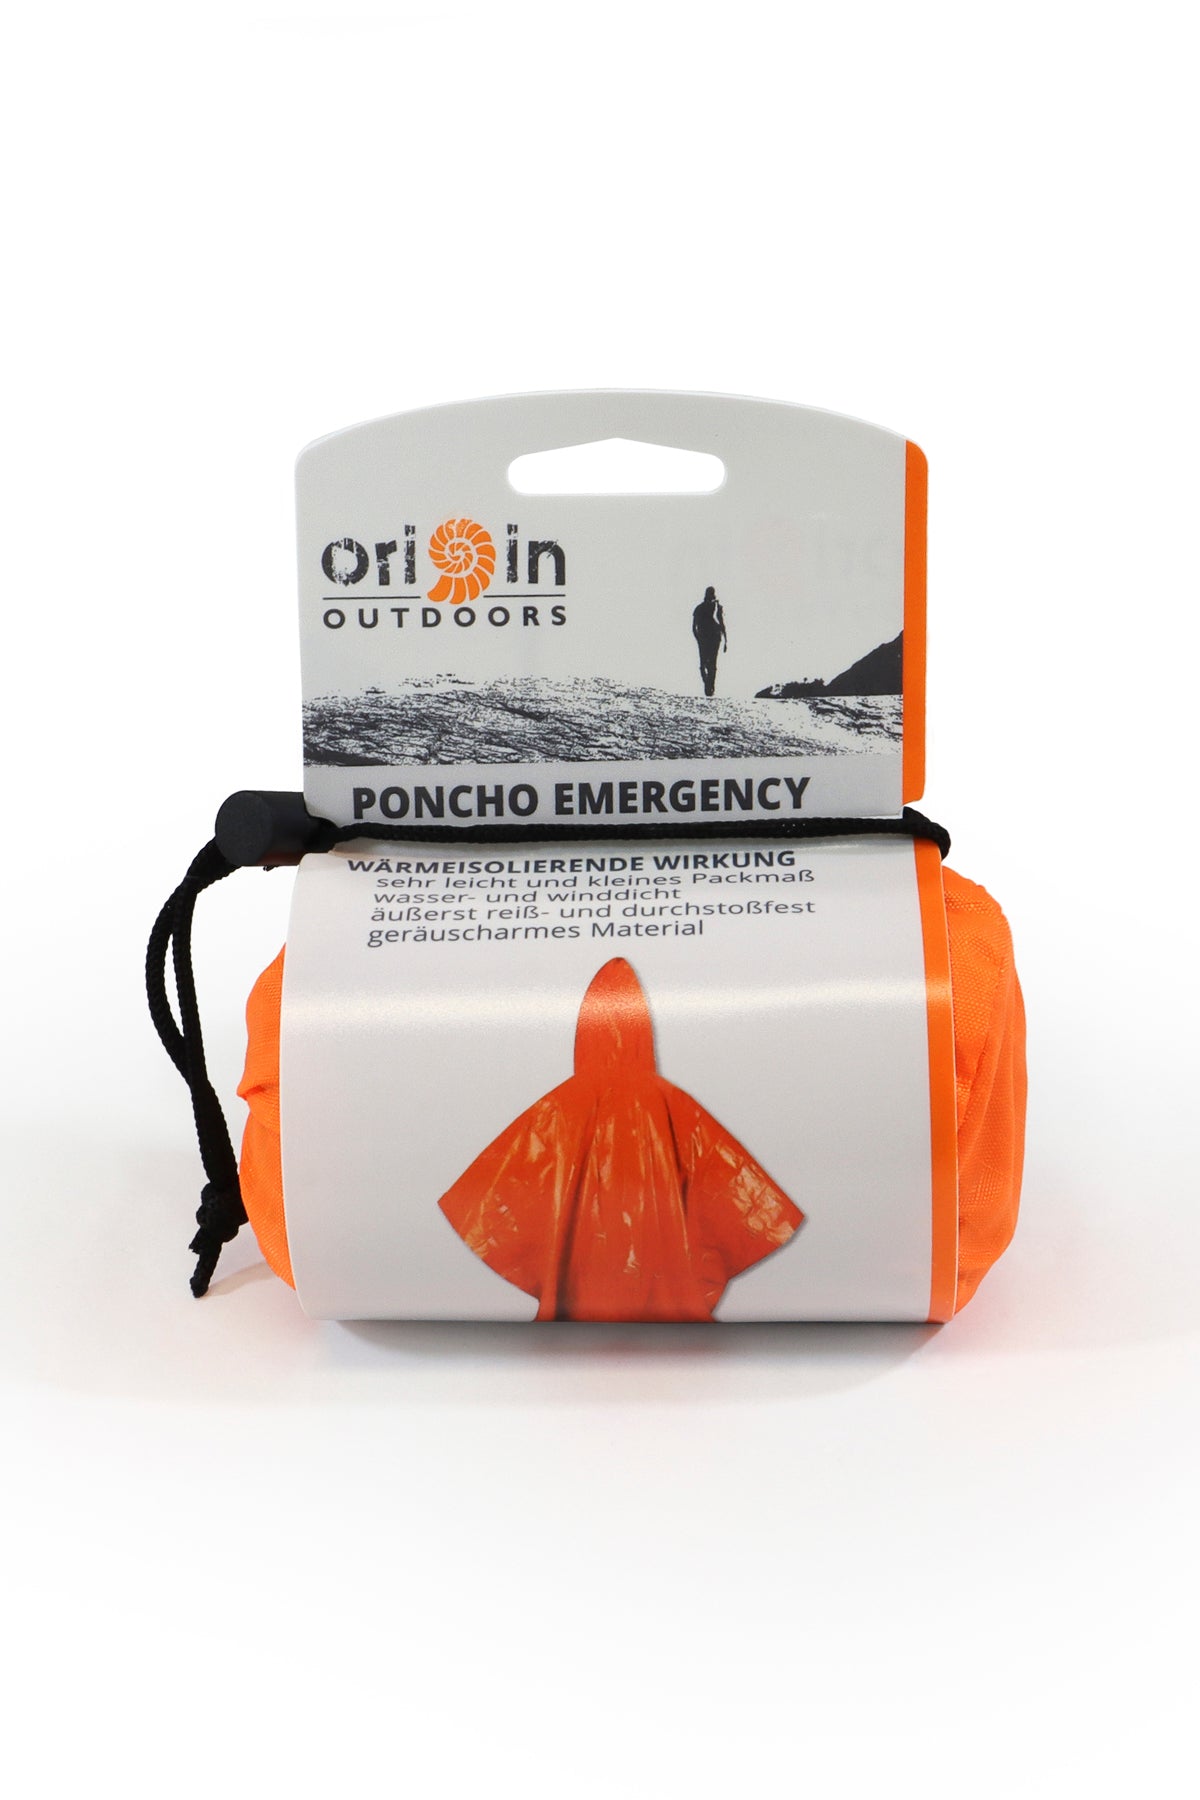 Lietus mētelis - pončo Origin Outdoors Poncho Emergency